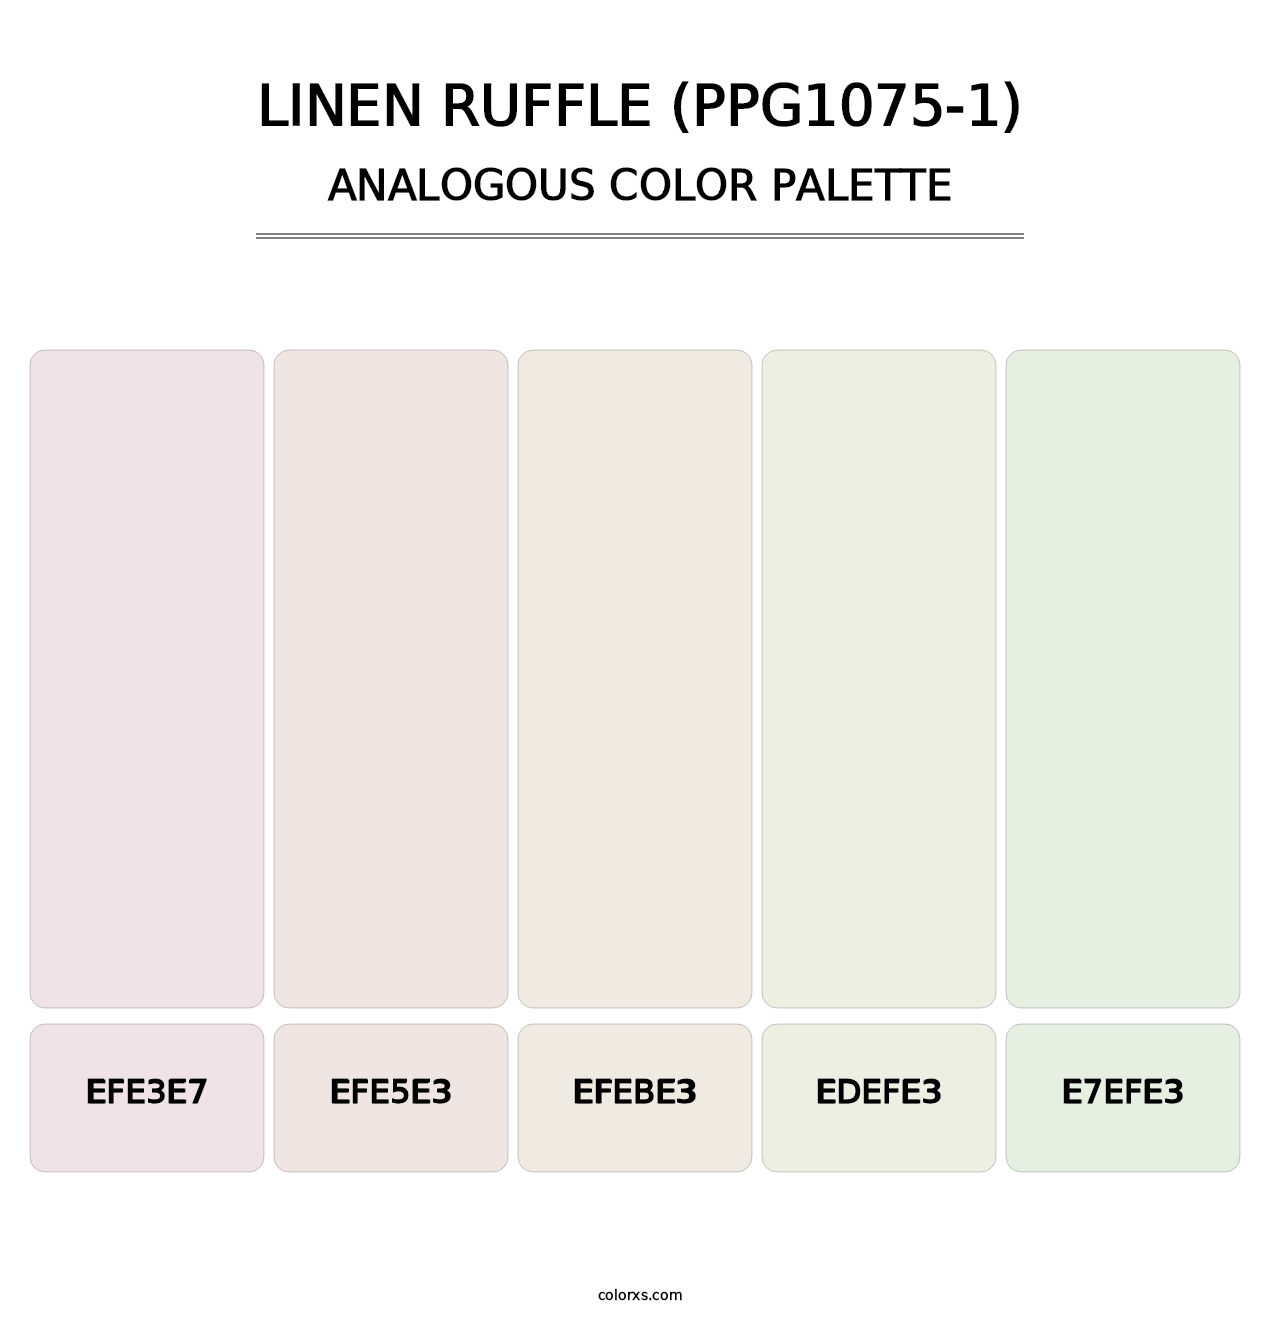 Linen Ruffle (PPG1075-1) - Analogous Color Palette